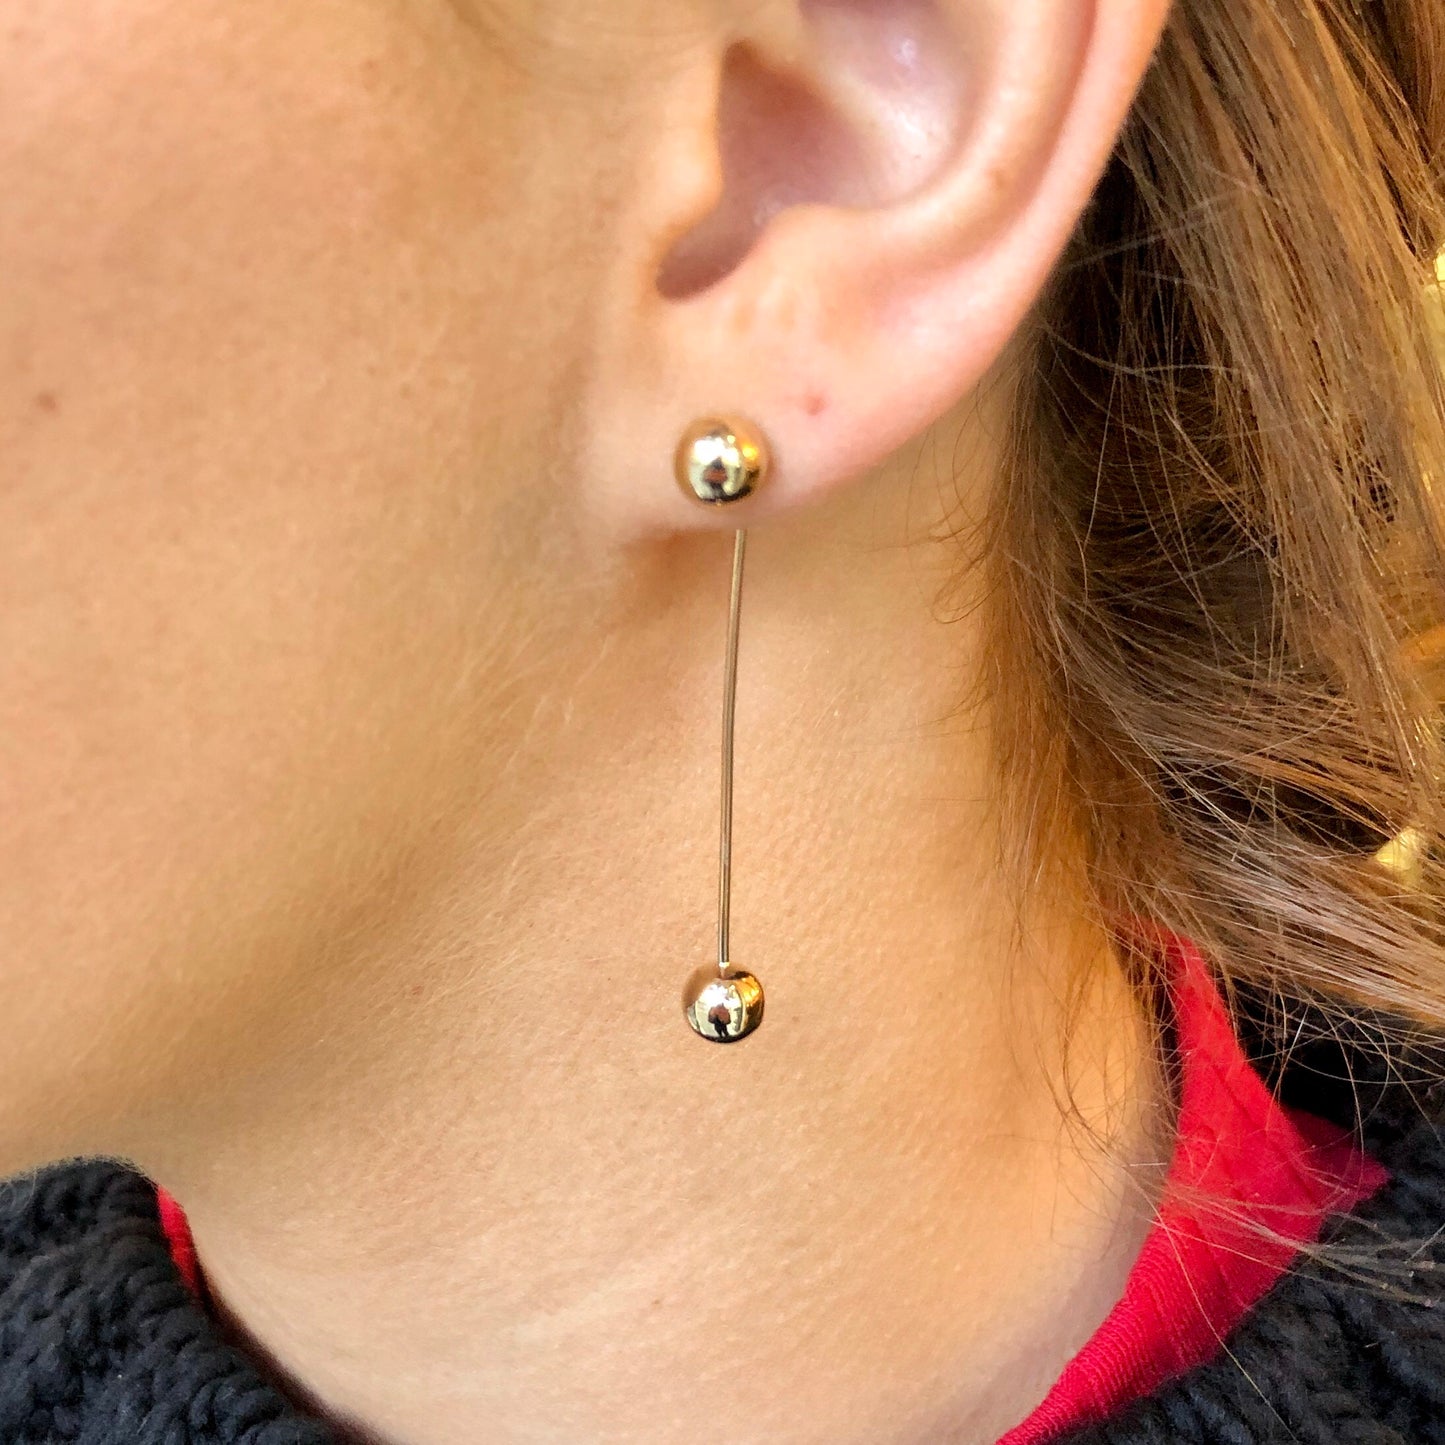 9ct Gold Long Bar Drop Earrings - John Ross Jewellers